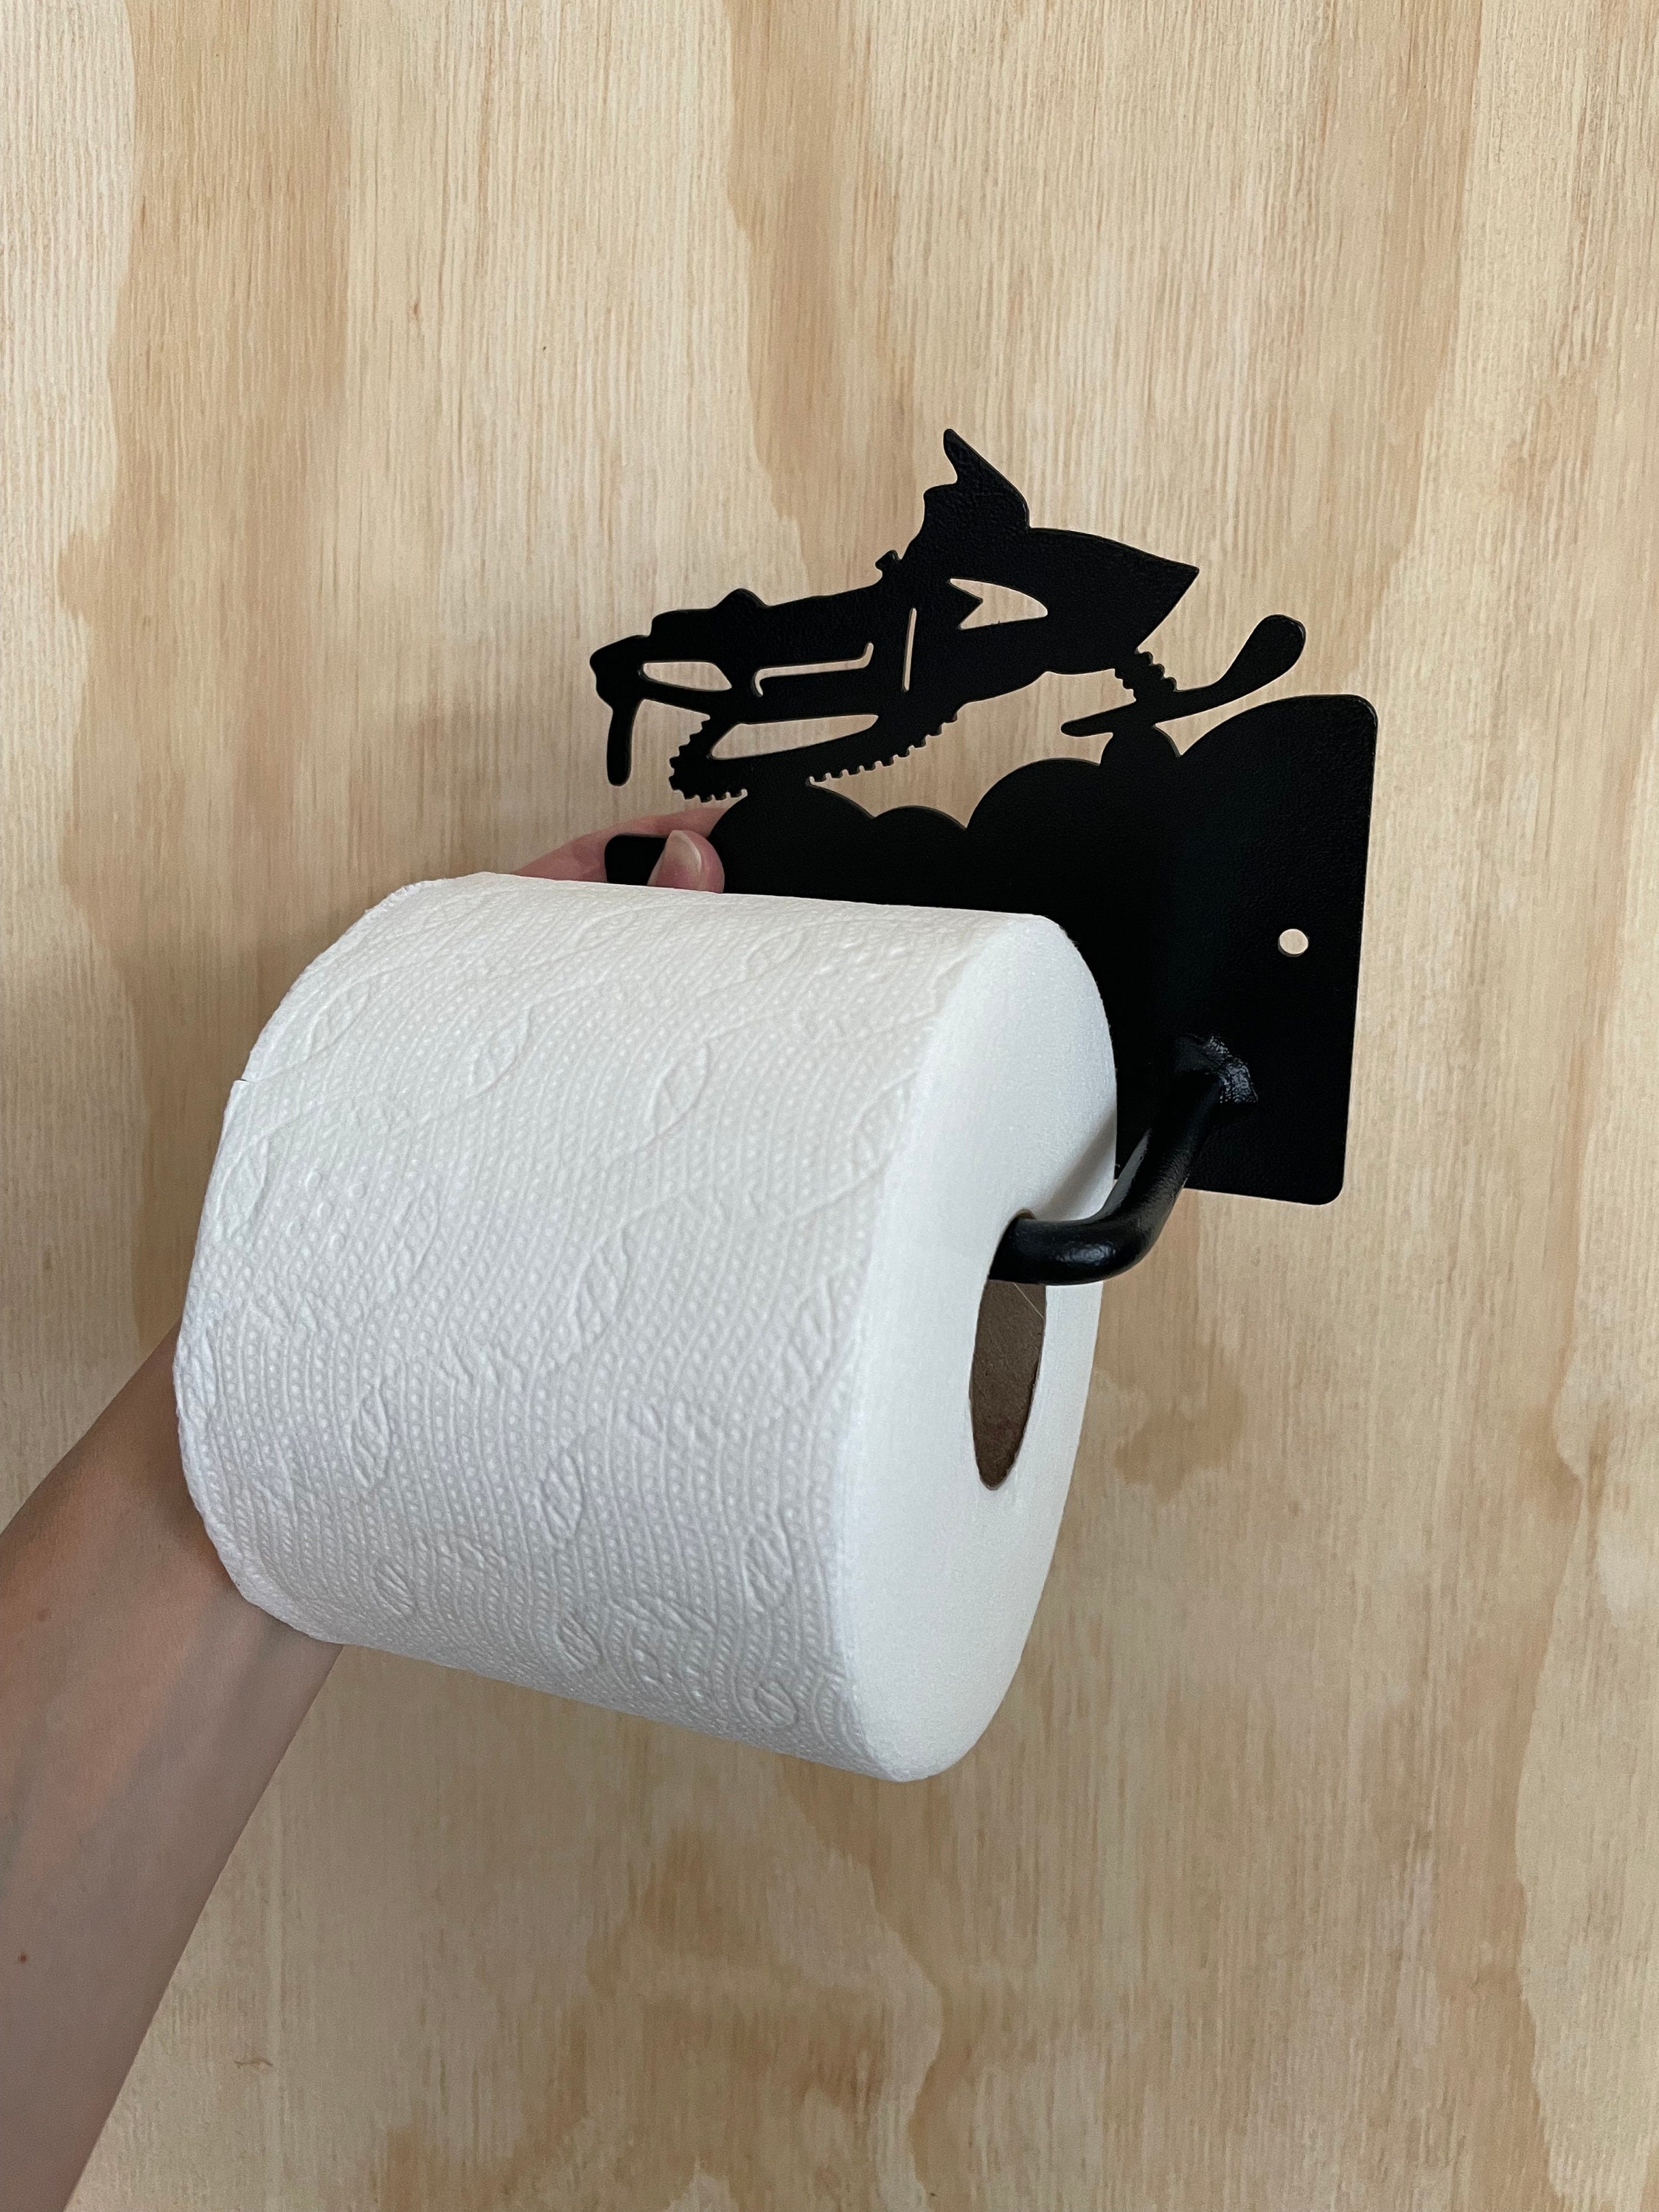 Bulk toilet paper rolls, MCD Supply